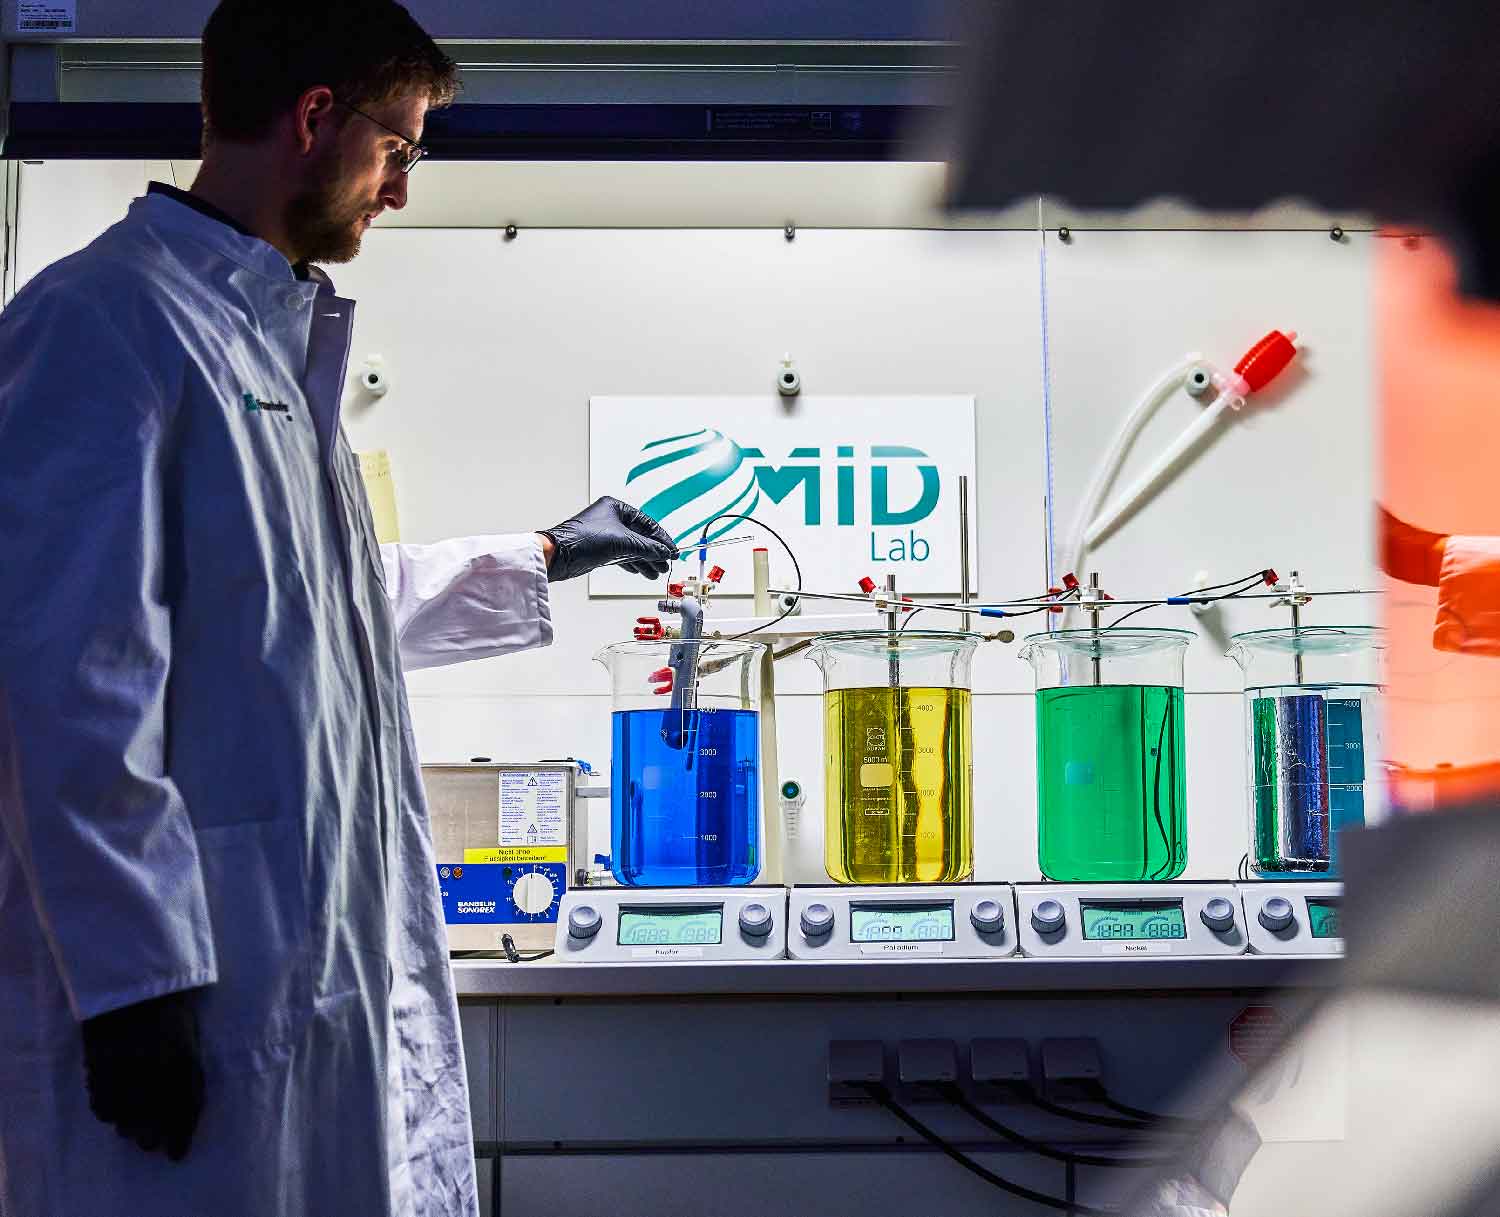 Ein Mann steht in einem Laborkittel vor vier großen Gefäßen mit farbigen Flüssigkeiten und taucht ein Bauteil in ein Gefäß ein